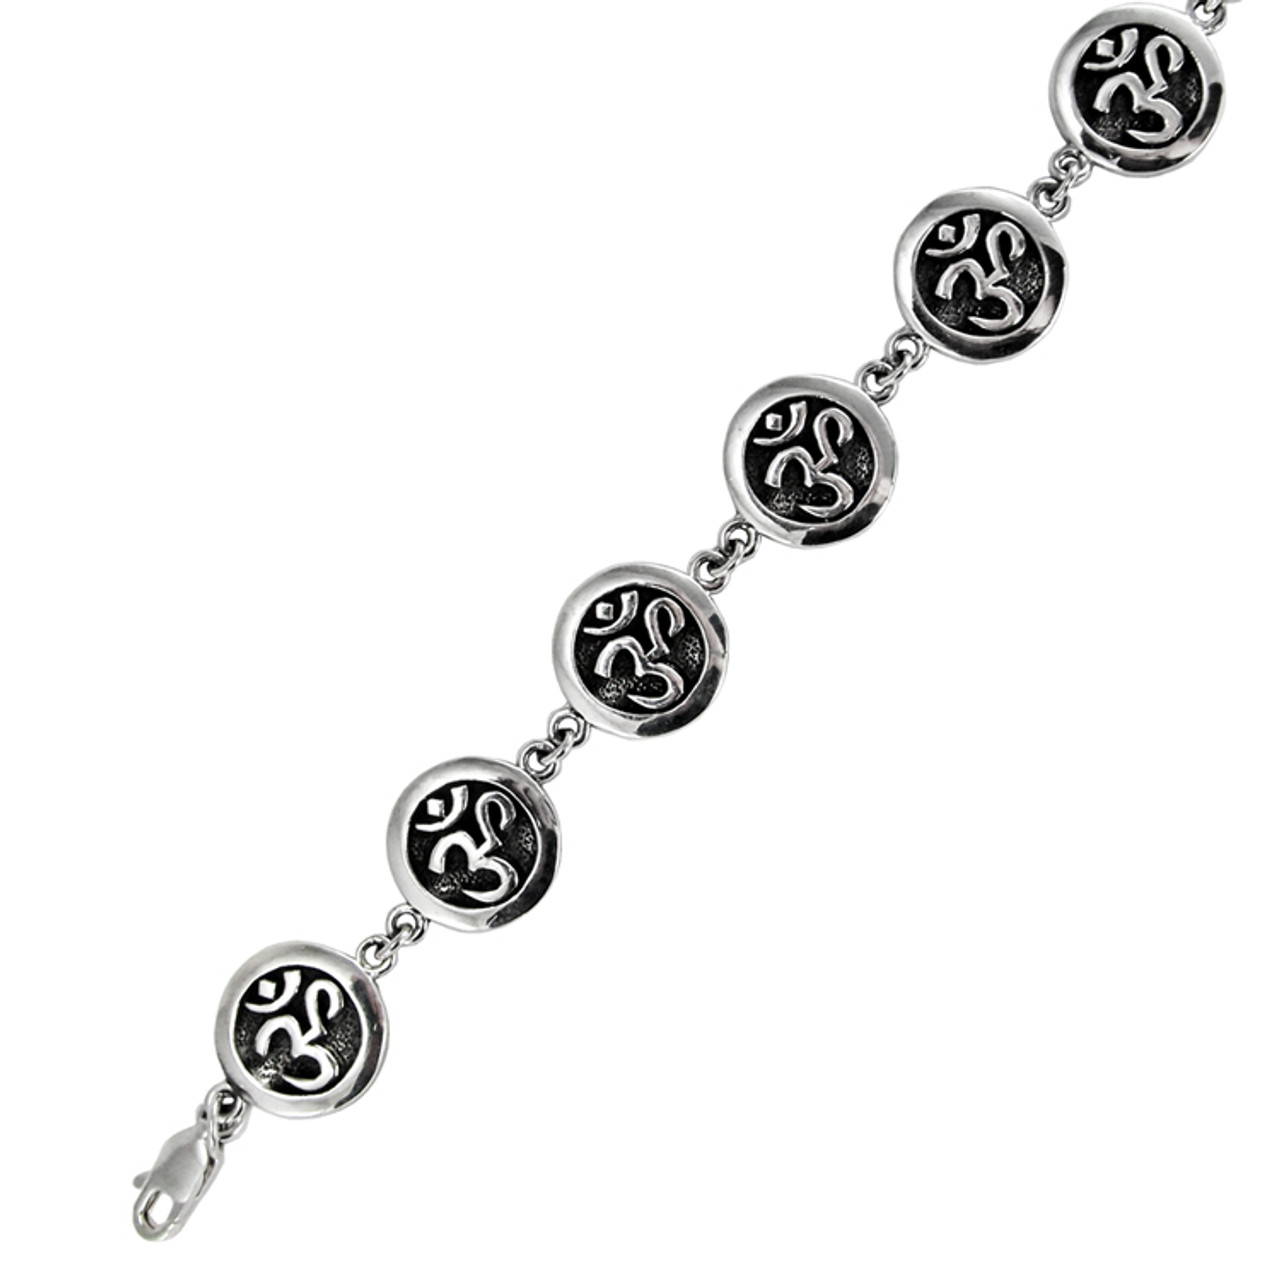 OM bracelet, men's bracelet with Tibetan silver Om charm, Hindu, gray cord,  bracelet for men, gift for him, yoga bracelet, for boyfriend – Shani & Adi  Jewelry